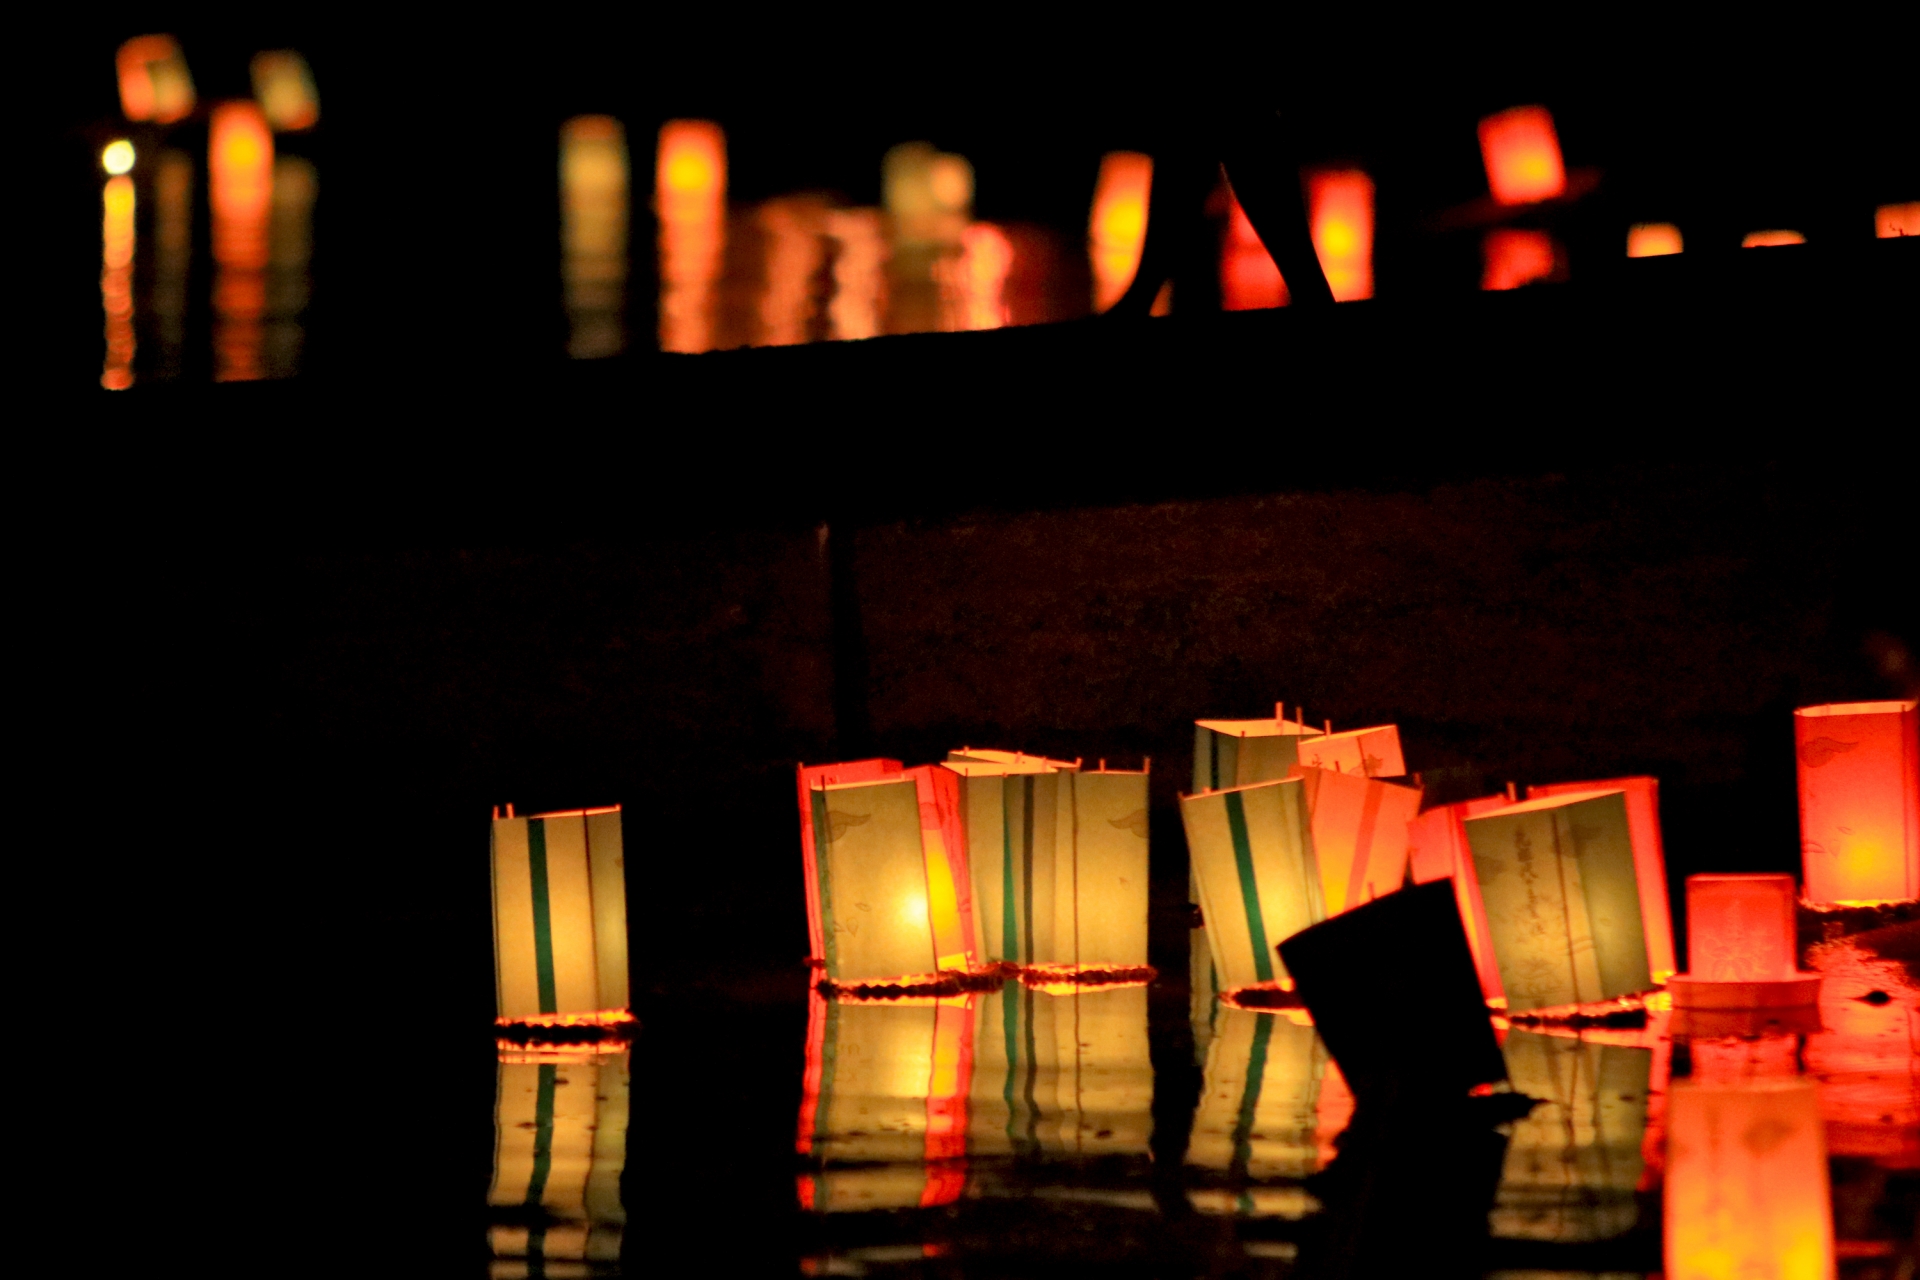 Obon floating lanterns (toro nagashi